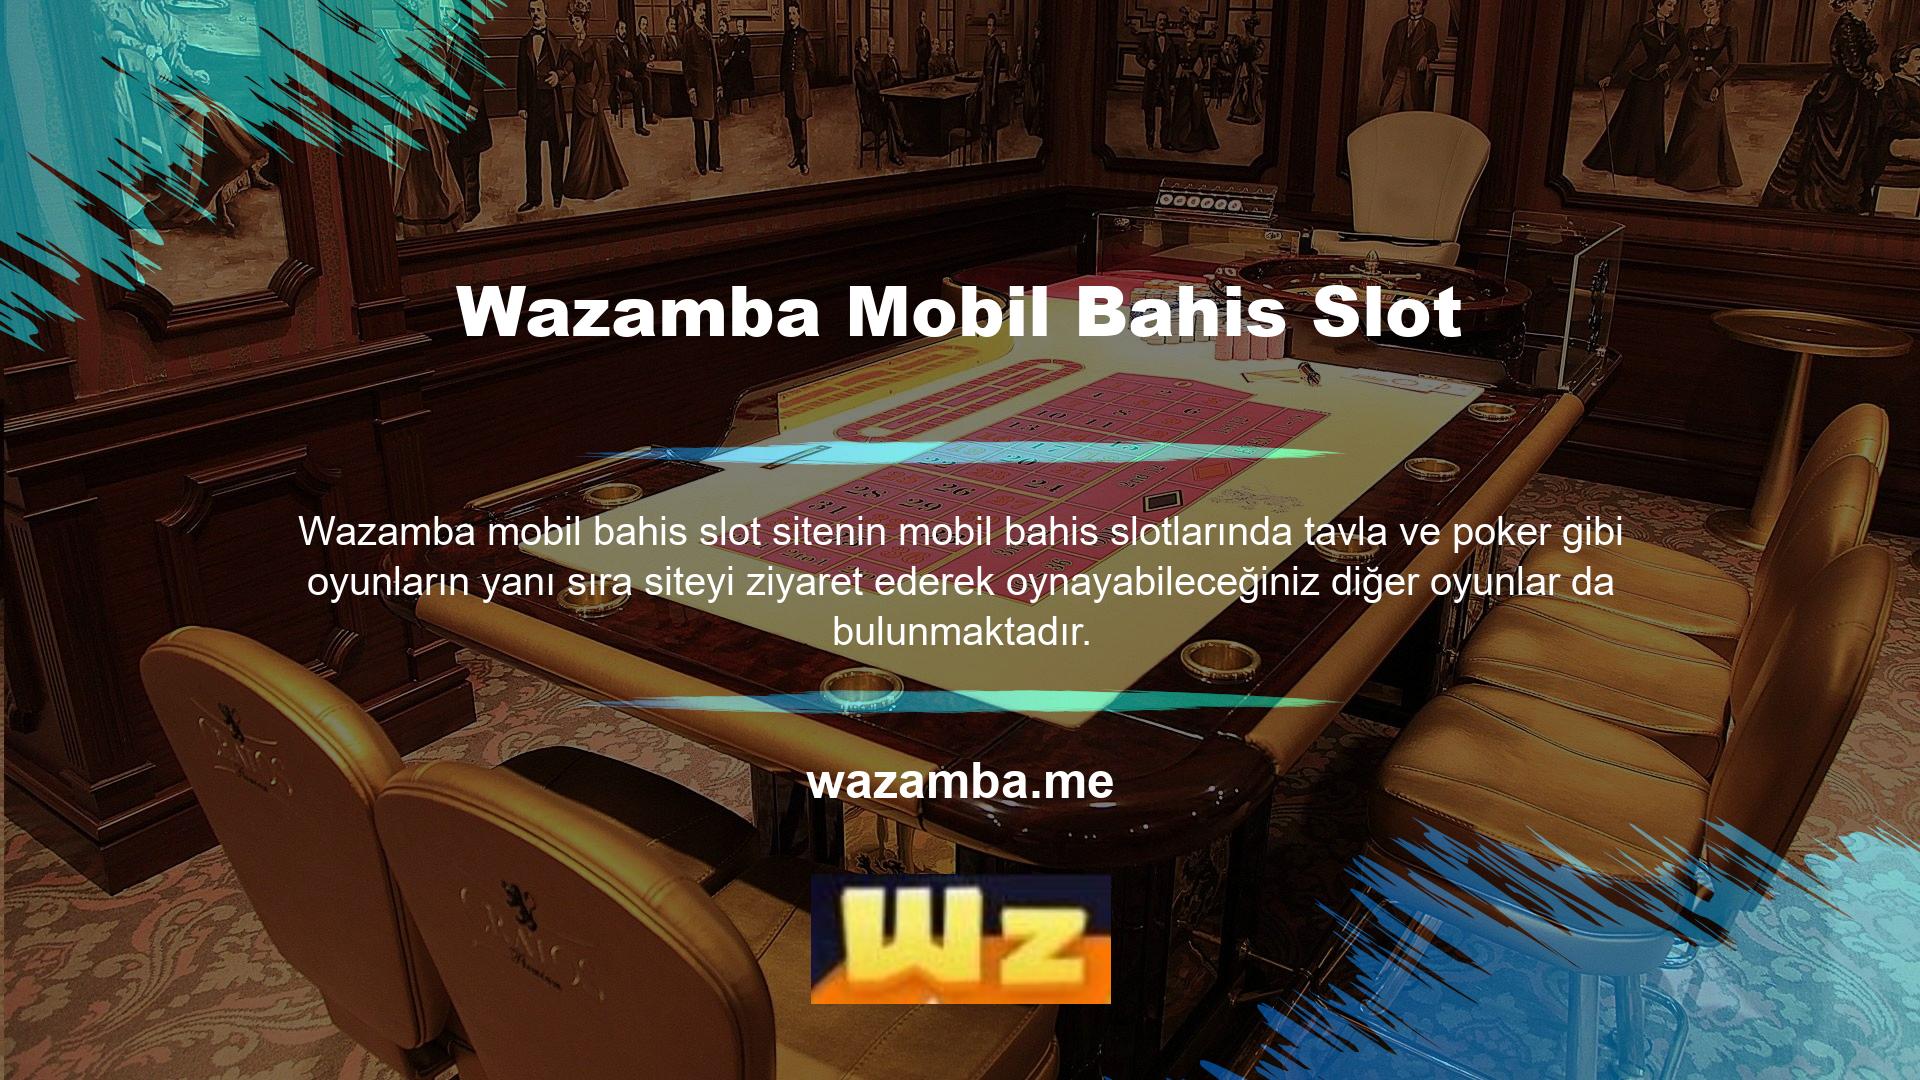 Size daha fazla bilgi vermek için Wazamba mobil bahis oyunlarından slot oyunlarının bir listesini derledik